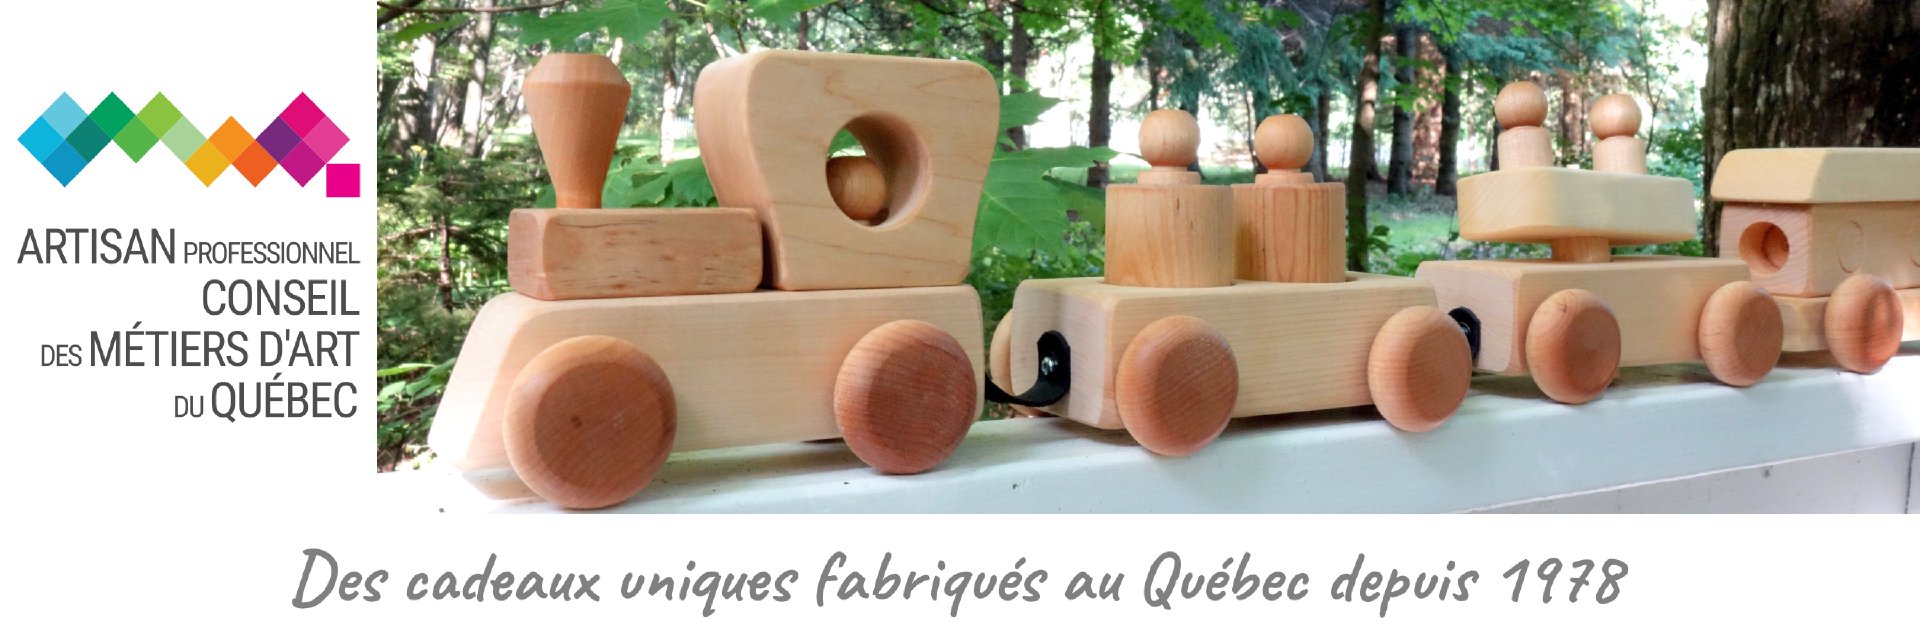 Des cadeaux uniques fabriqués au Québec depuis 1978